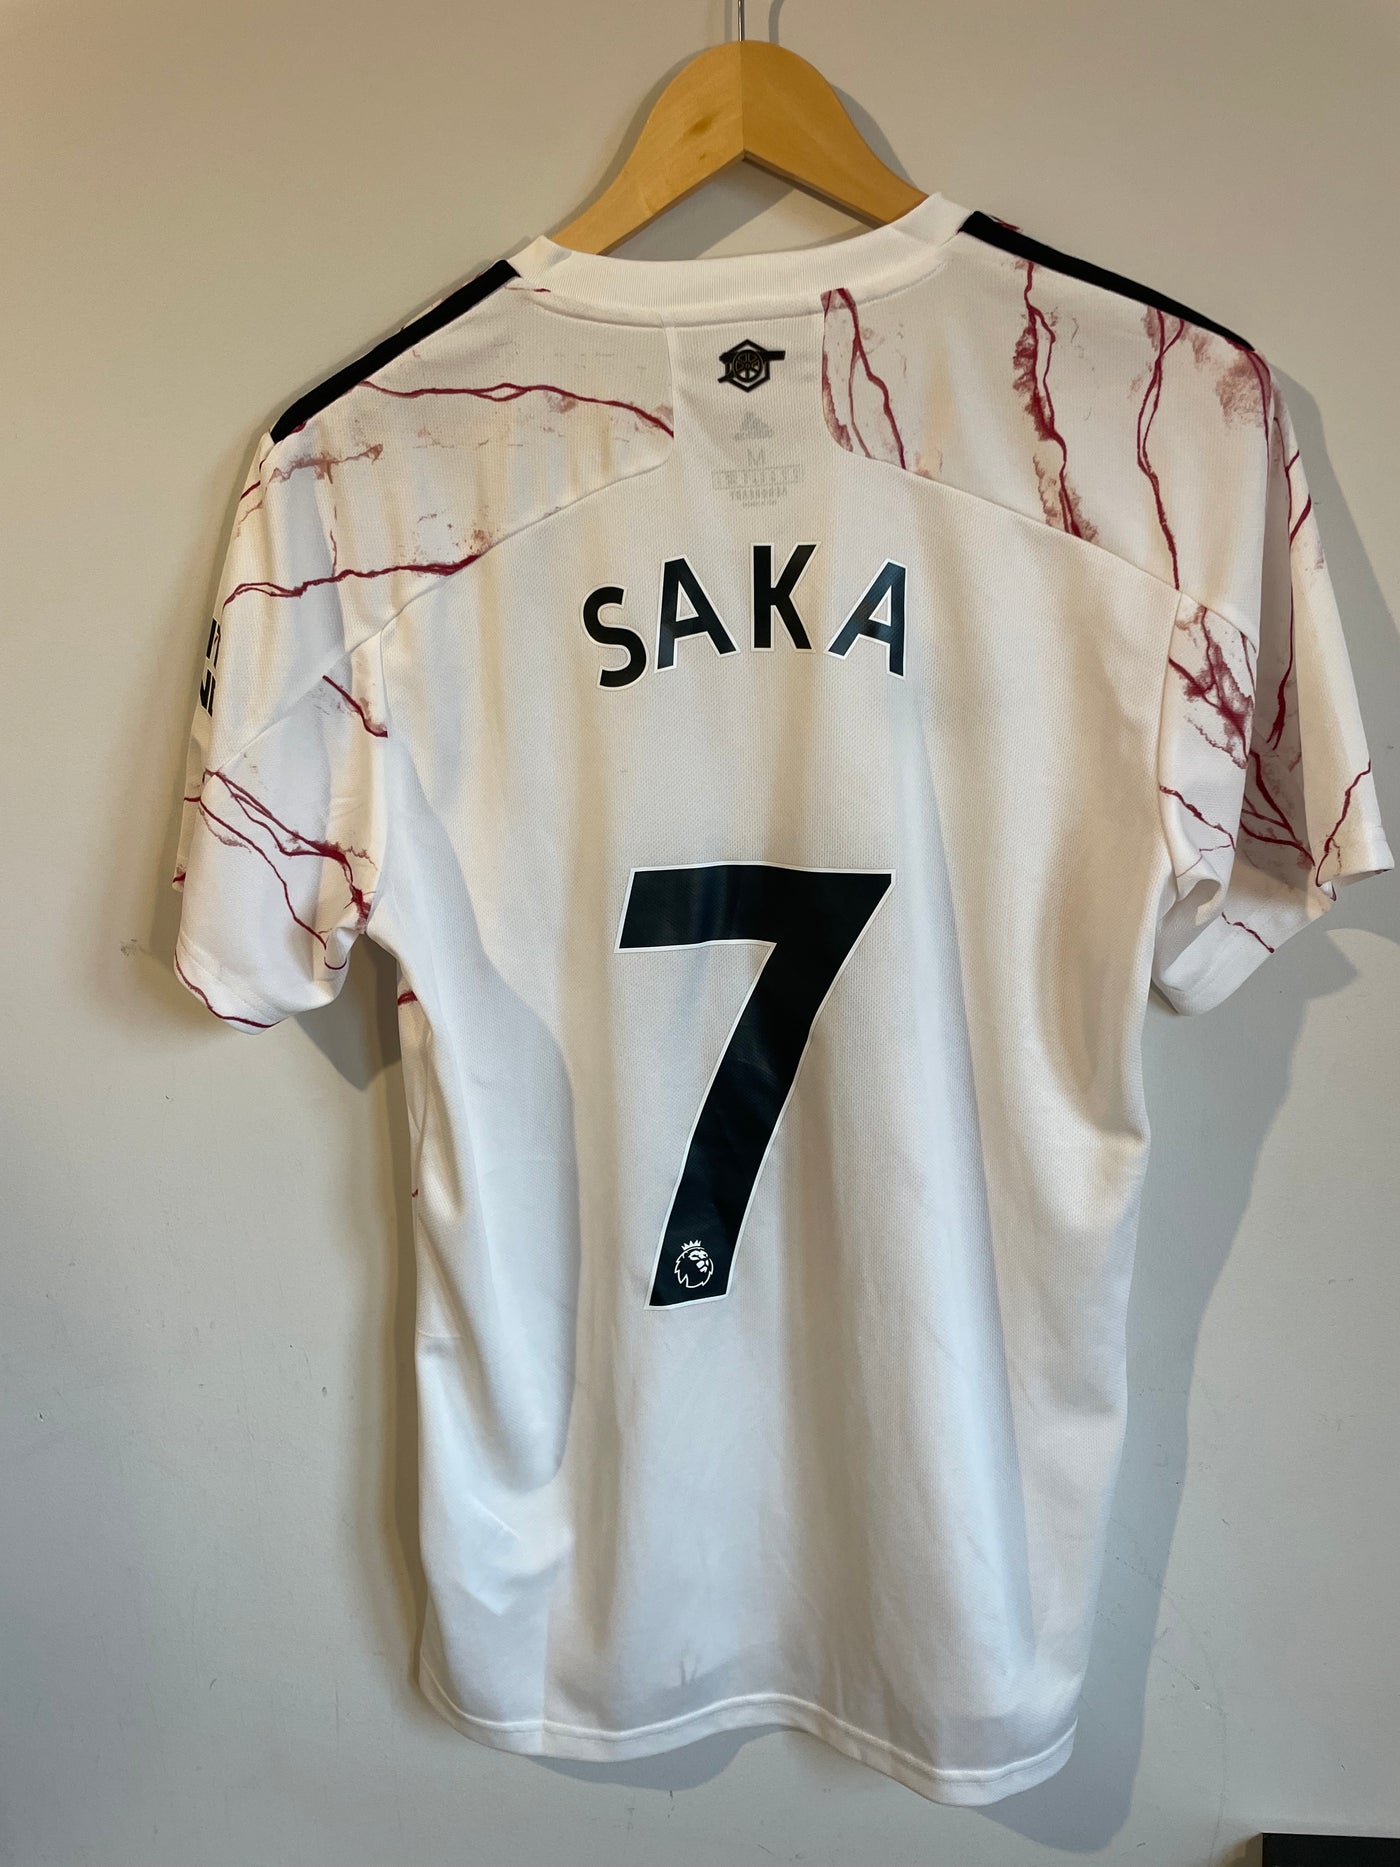 Arsenal Away 20/21 Kit. Saka